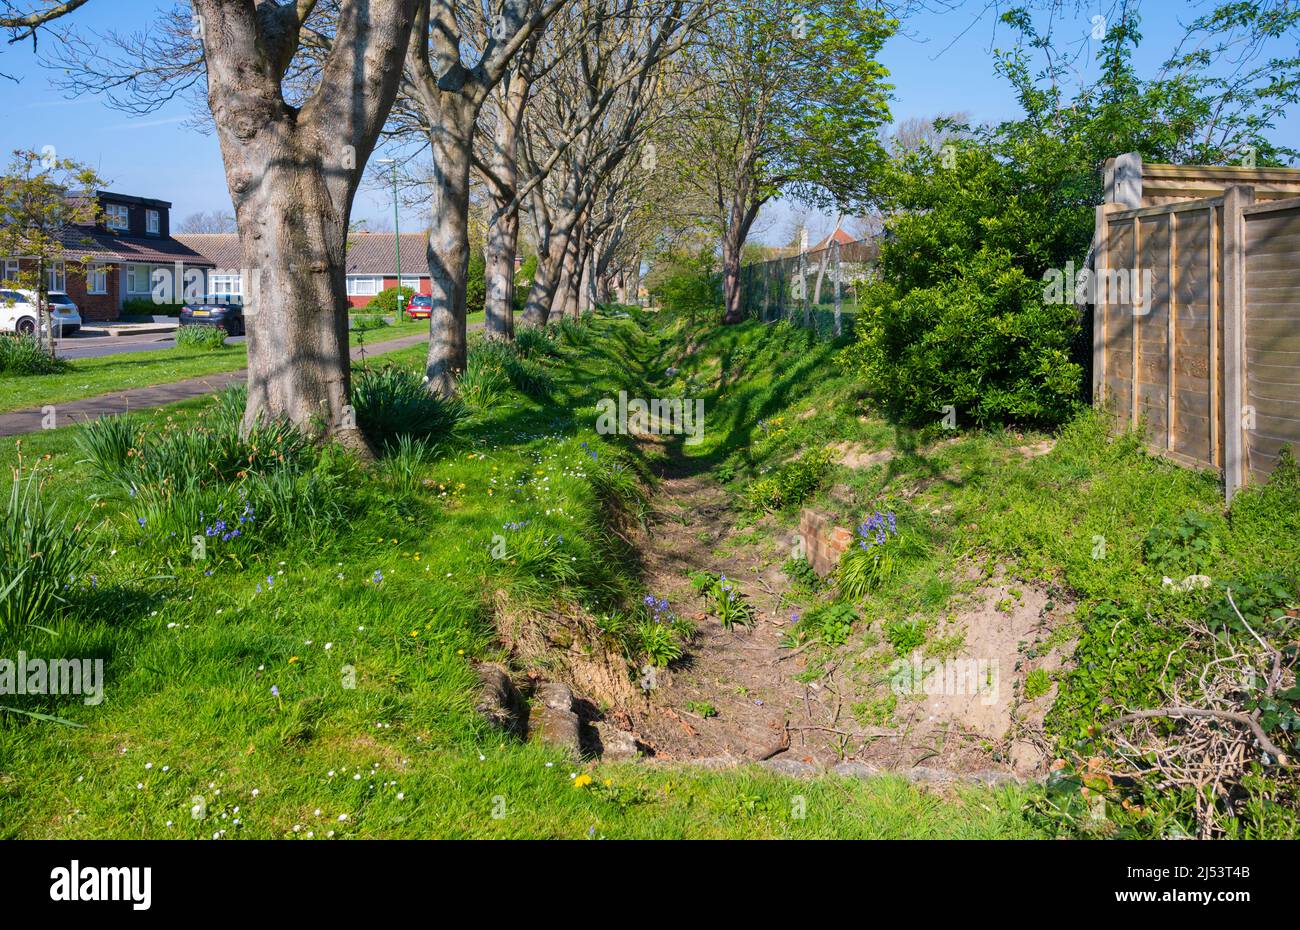 Zwei Hektar, ein kleiner Kohl (ein kleiner Wald) mit einem Wasserabfluss Graben neben in Spring in East Preston, West Sussex, England, Großbritannien. Stockfoto